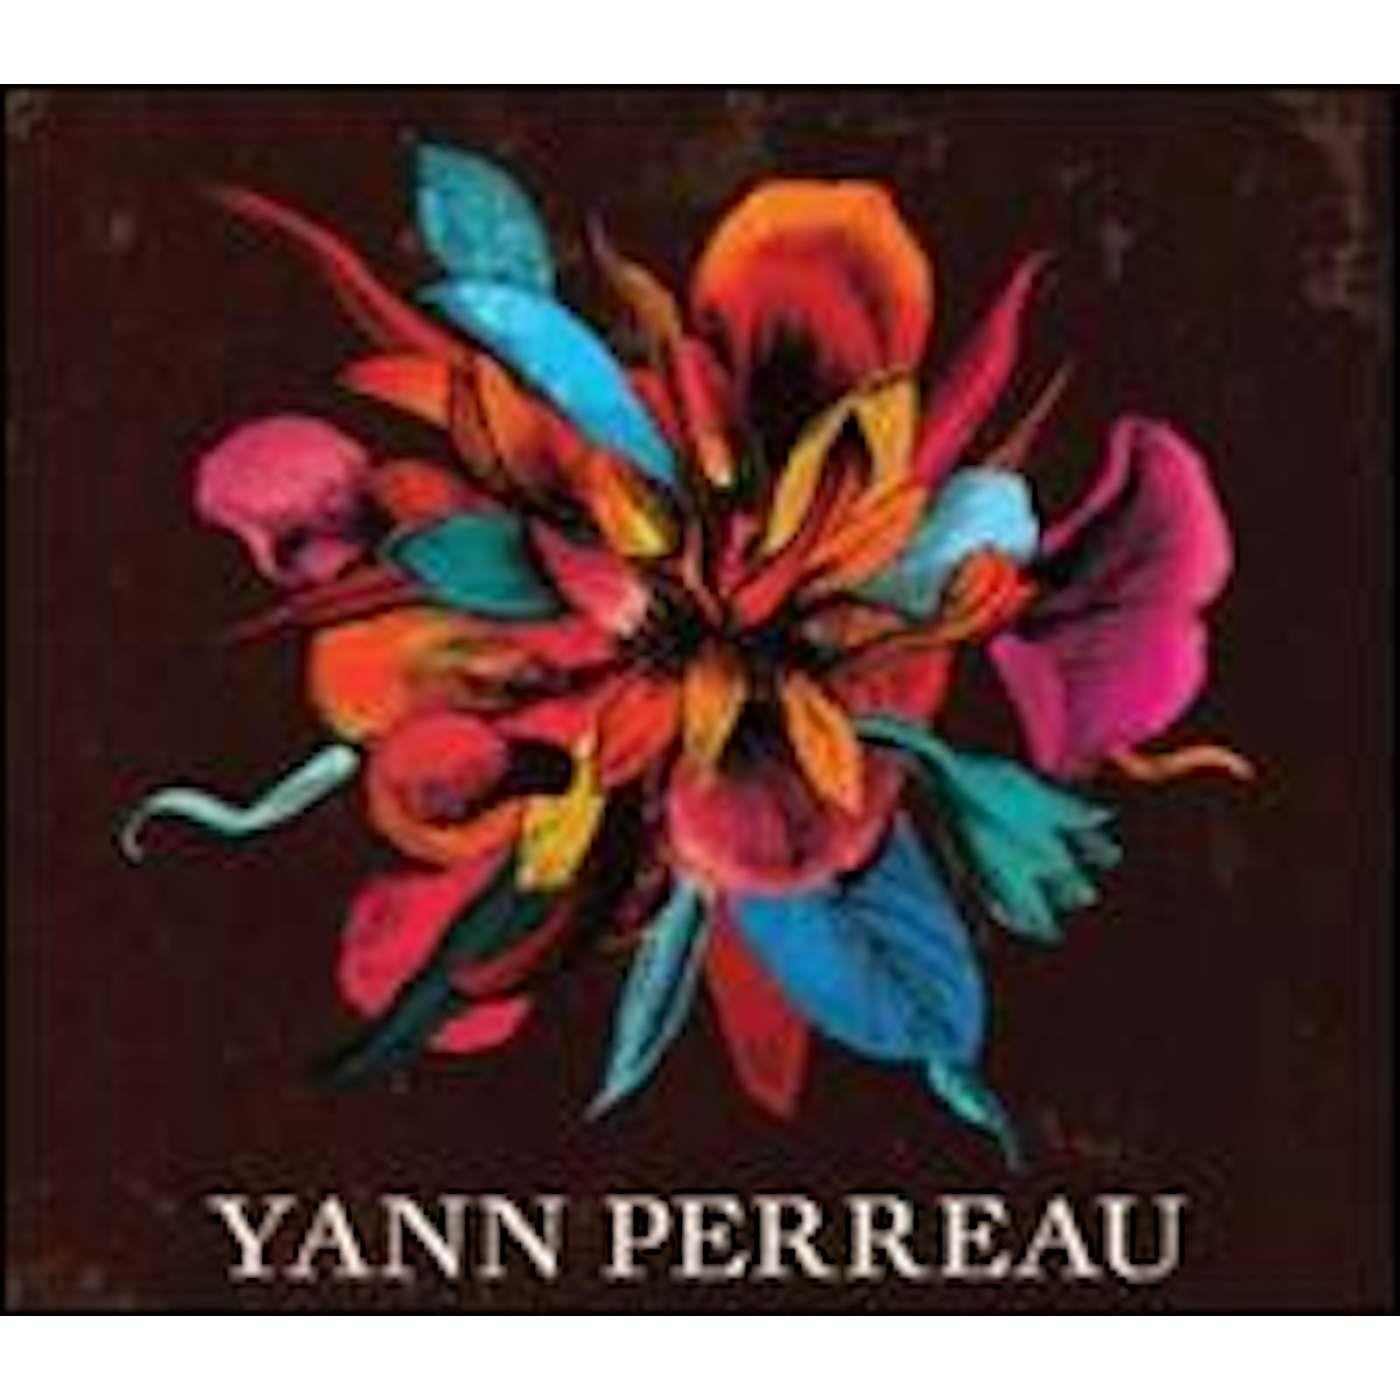 Yann Perreau Un serpent sous les fleurs Vinyl Record